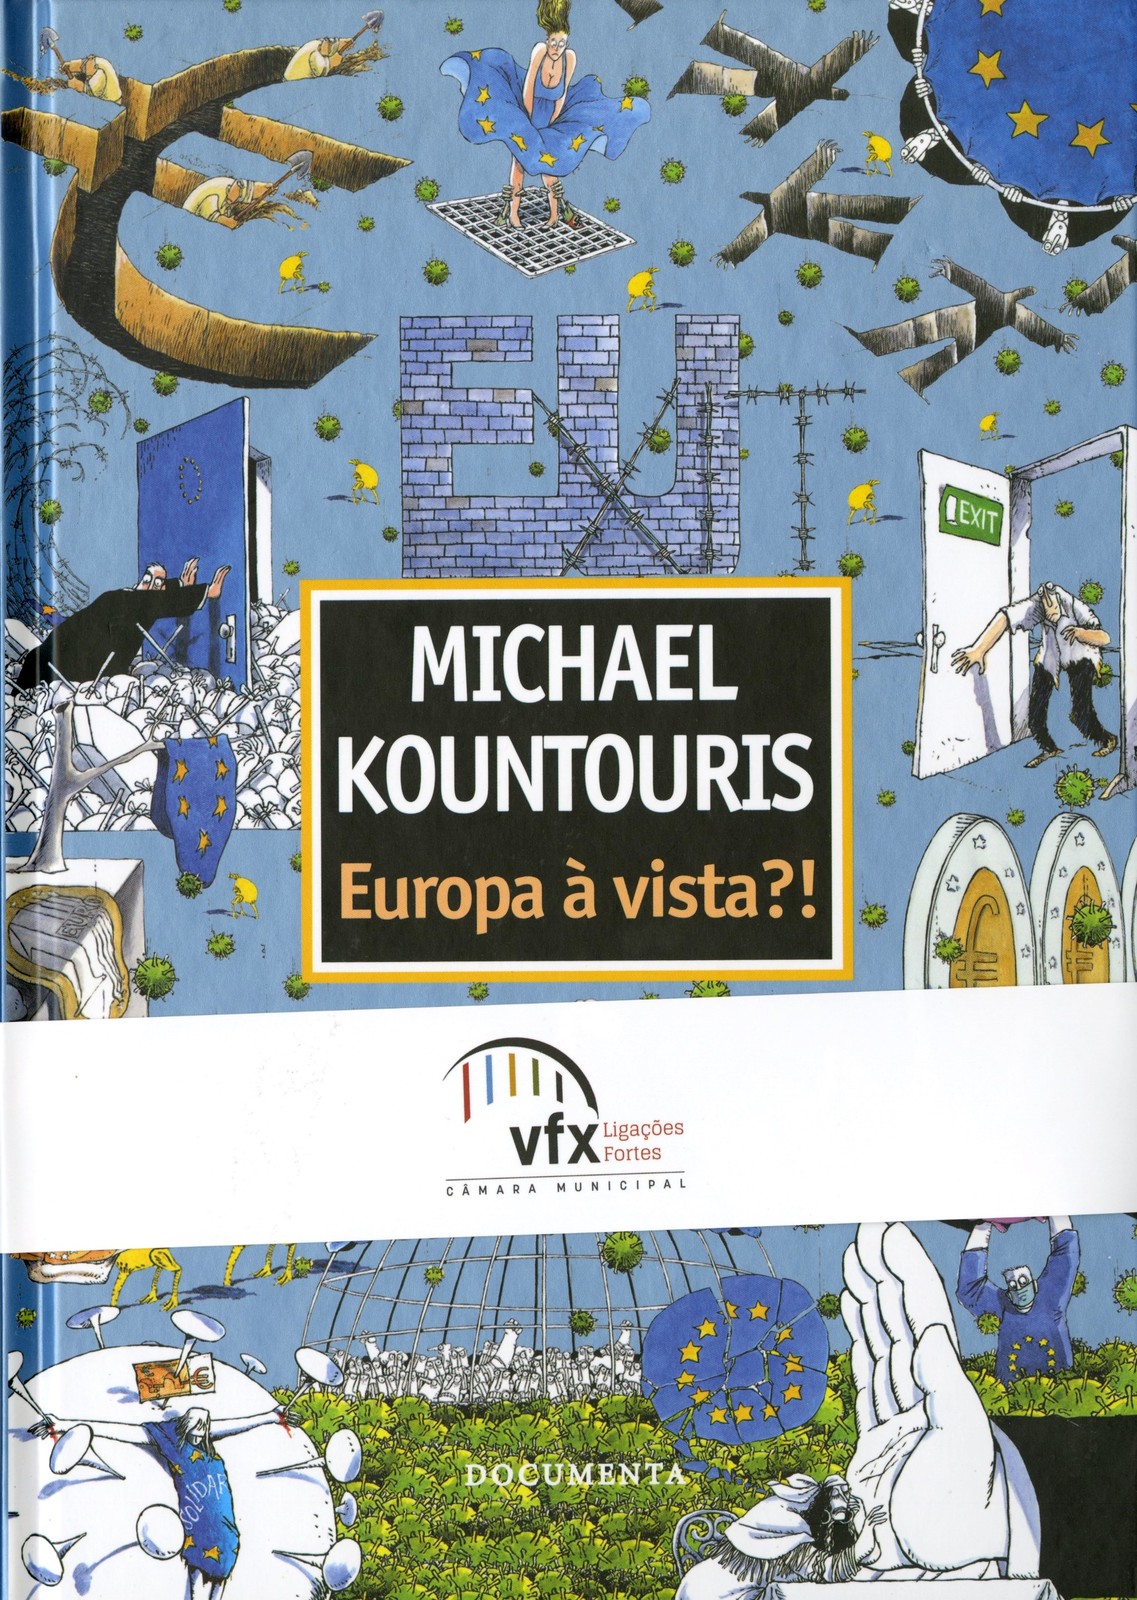 Catálogo da Exposição Michael Kountouris– Europa à vista?!